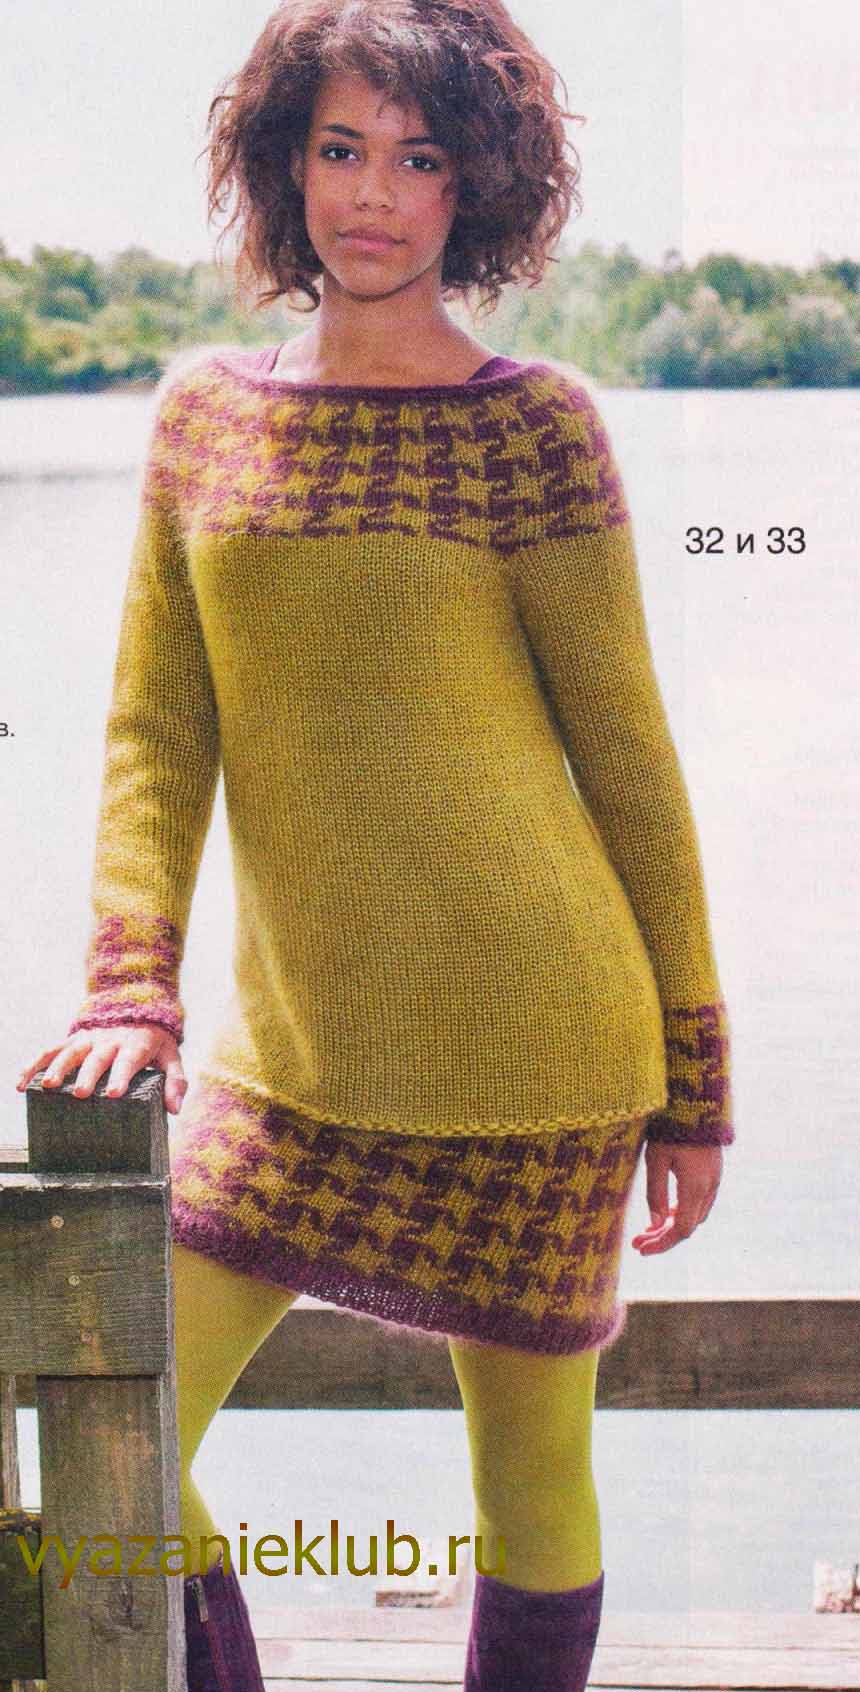 Вязание для женщин. Двухцветный пуловер с бахромой спицами - Самые красивые узоры спицами